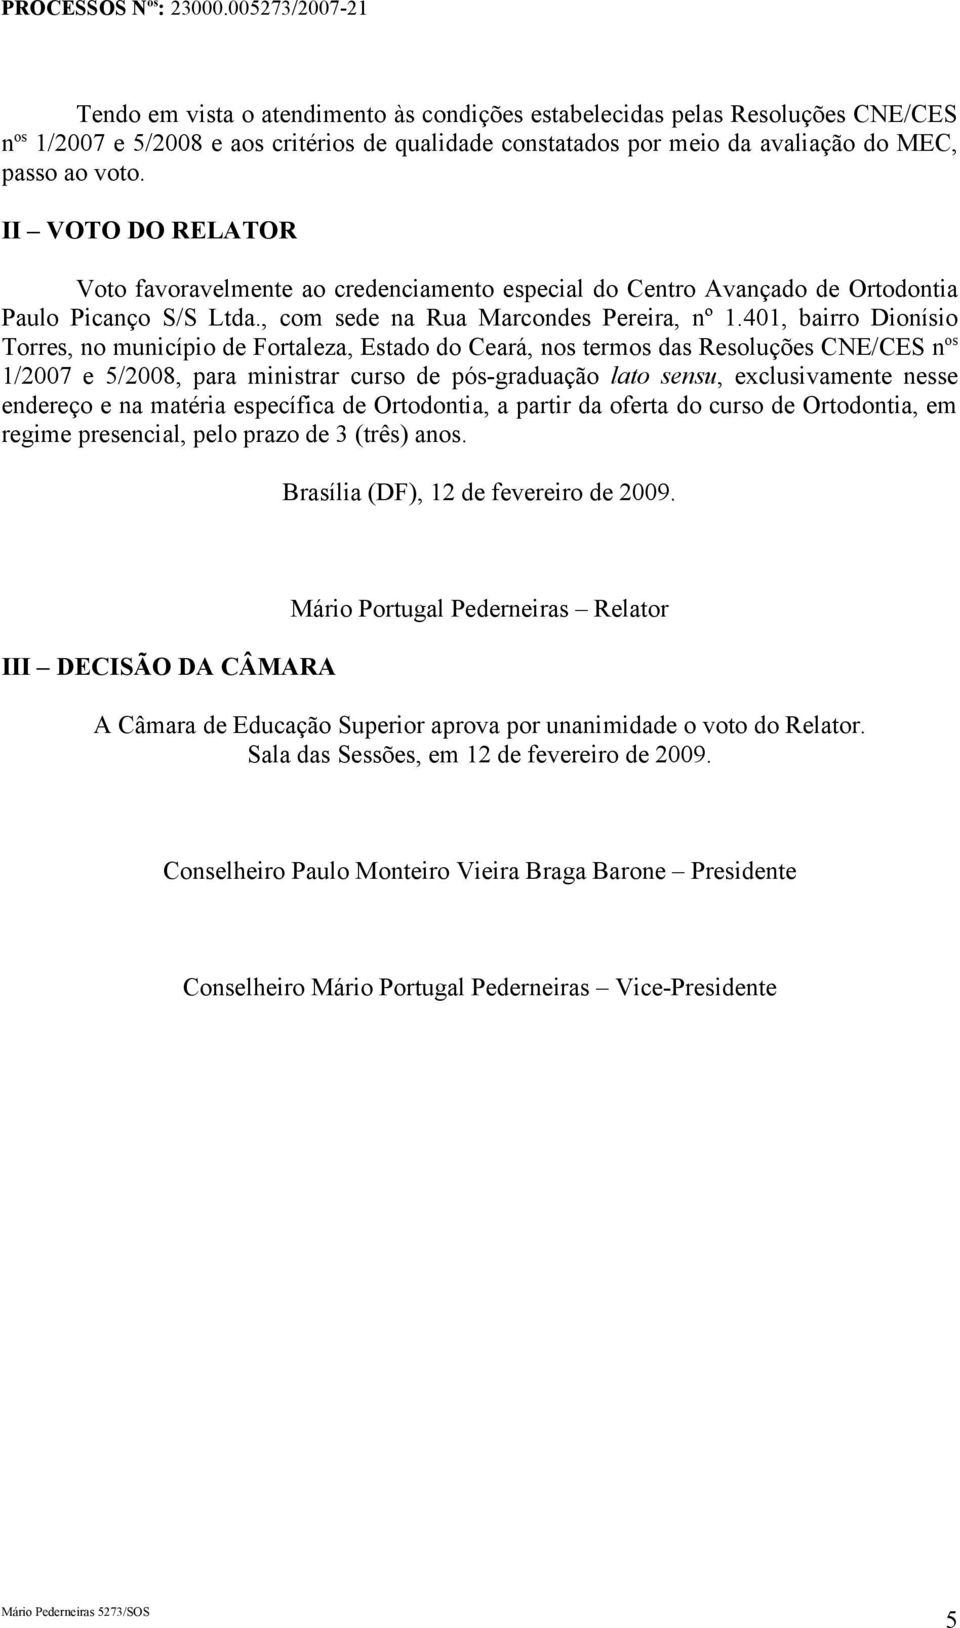 401, bairro Dionísio Torres, no município de Fortaleza, Estado do Ceará, nos termos das Resoluções CNE/CES n os 1/2007 e 5/2008, para ministrar curso de pós-graduação lato sensu, exclusivamente nesse